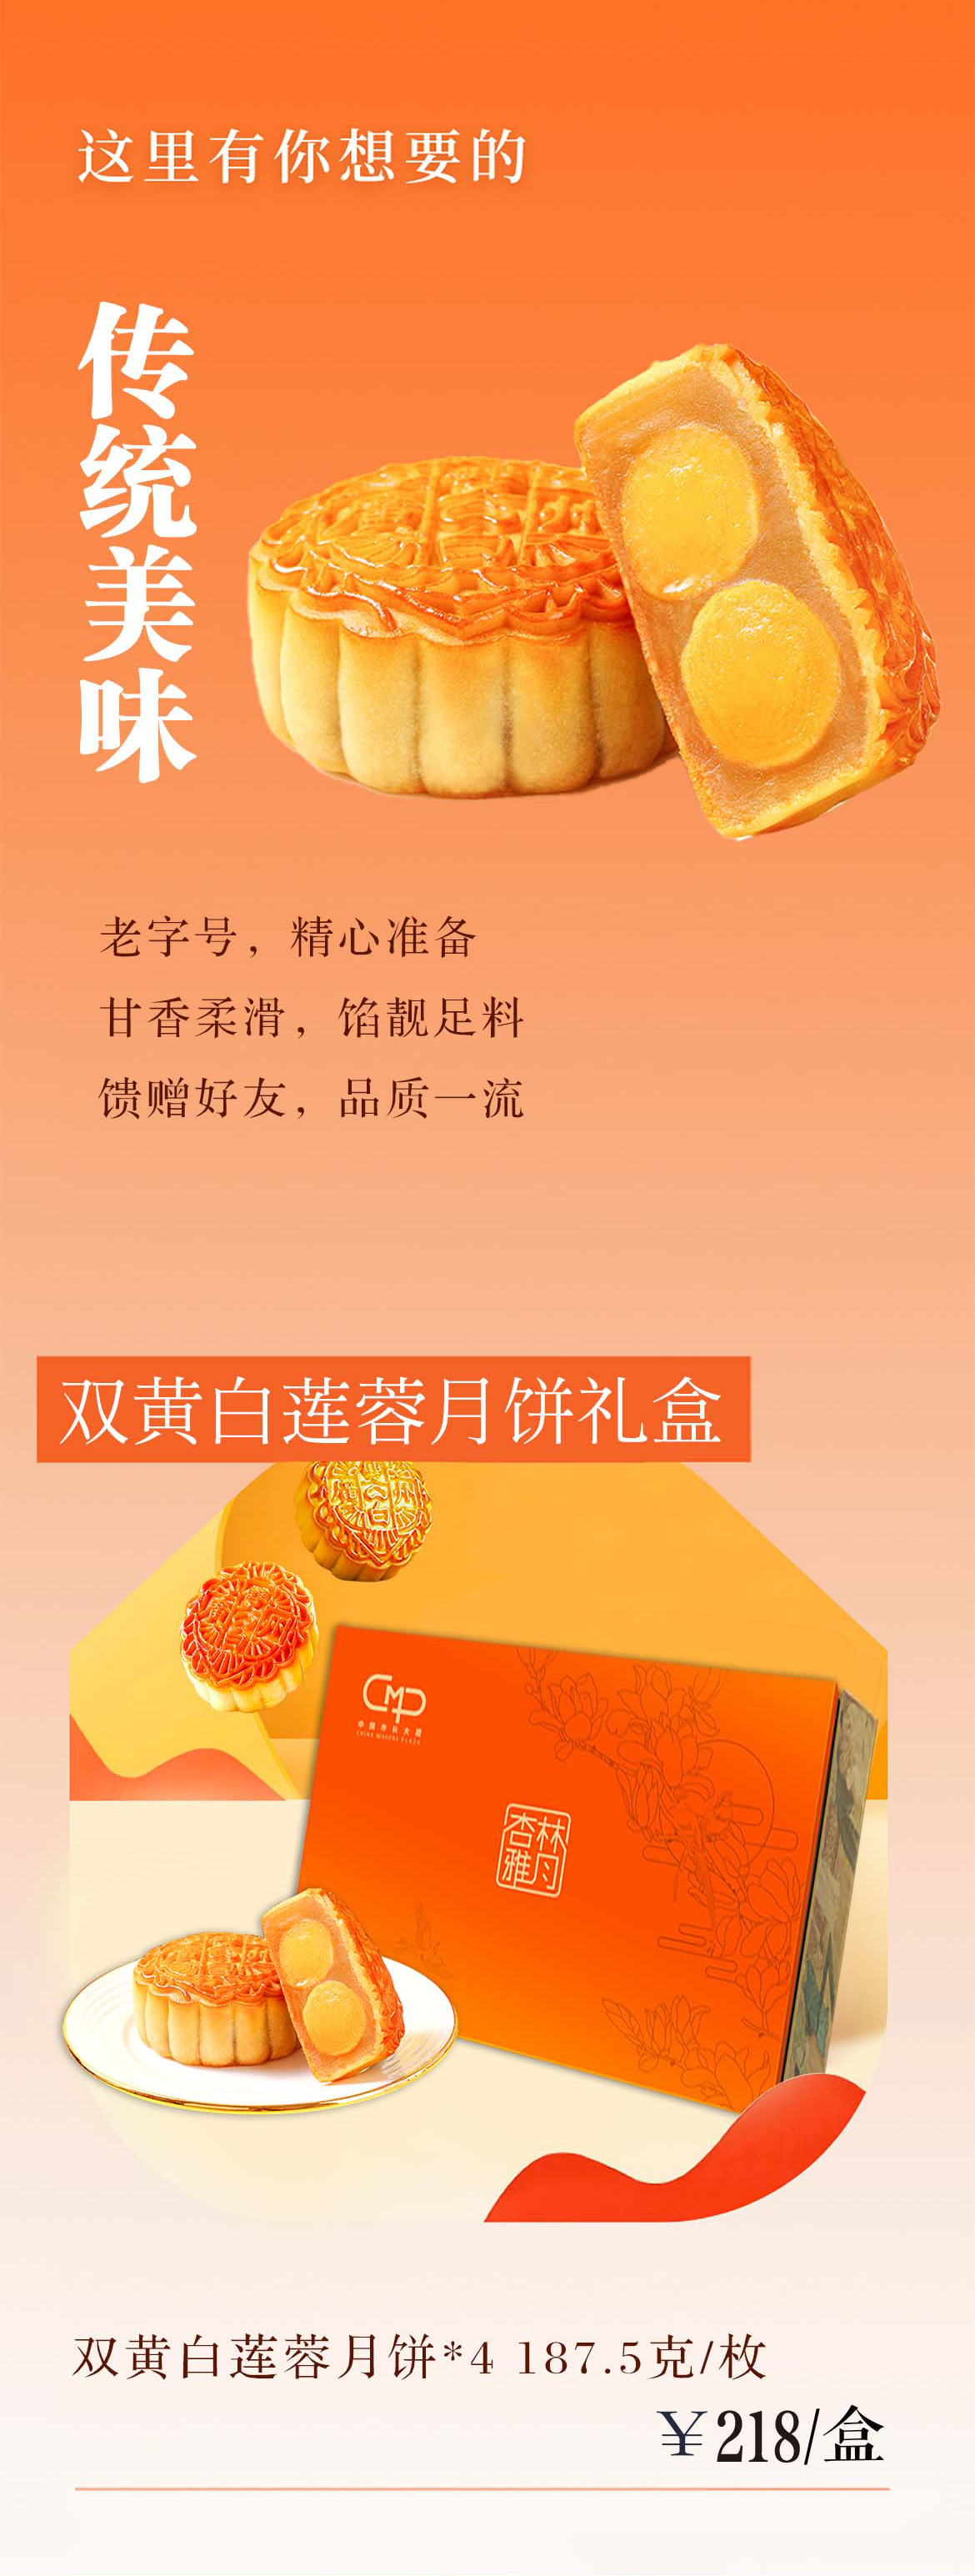 广州中国市长大厦月饼礼盒开售啦(图2)